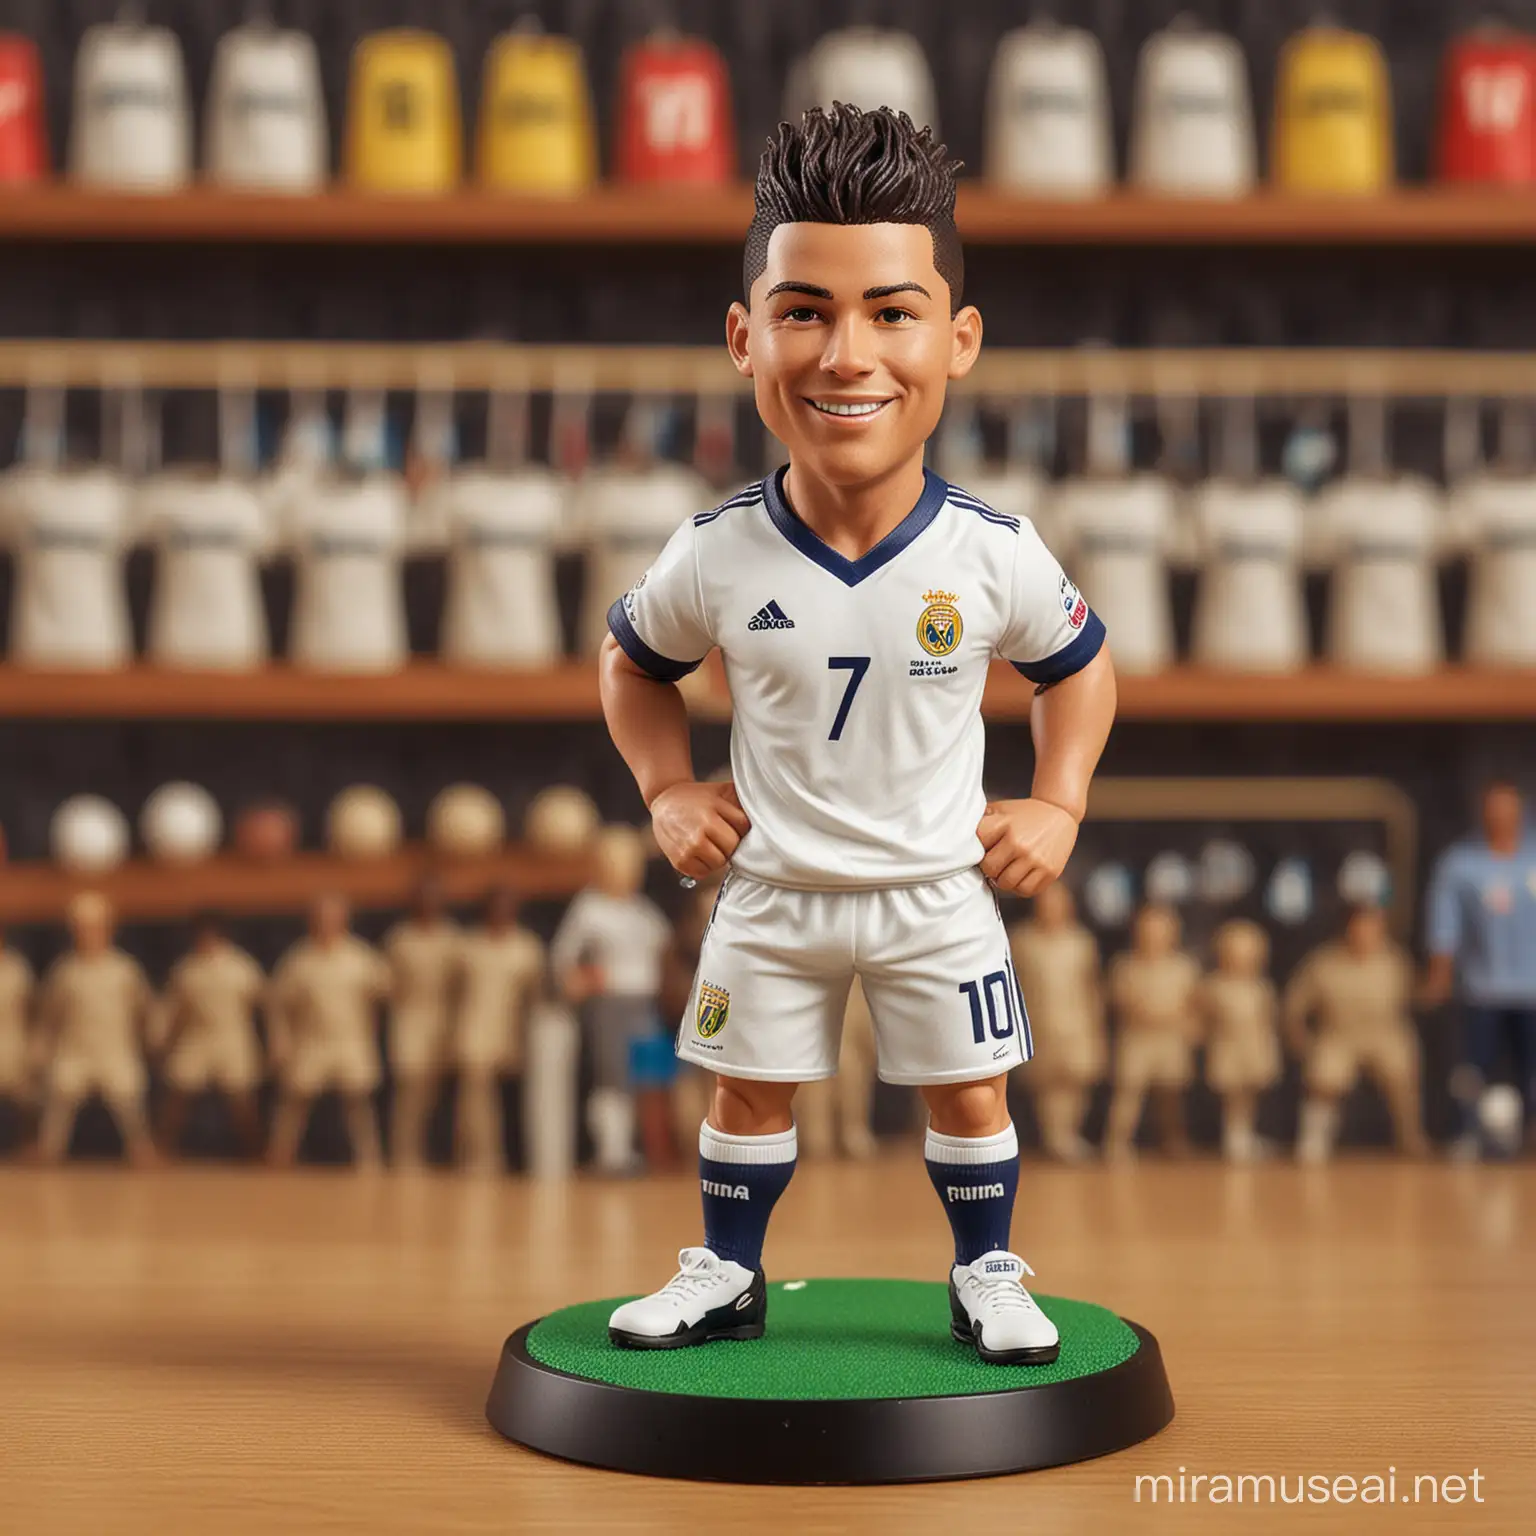 Toy Ronaldo Figure Dribbling Soccer Ball Toy Store Scene